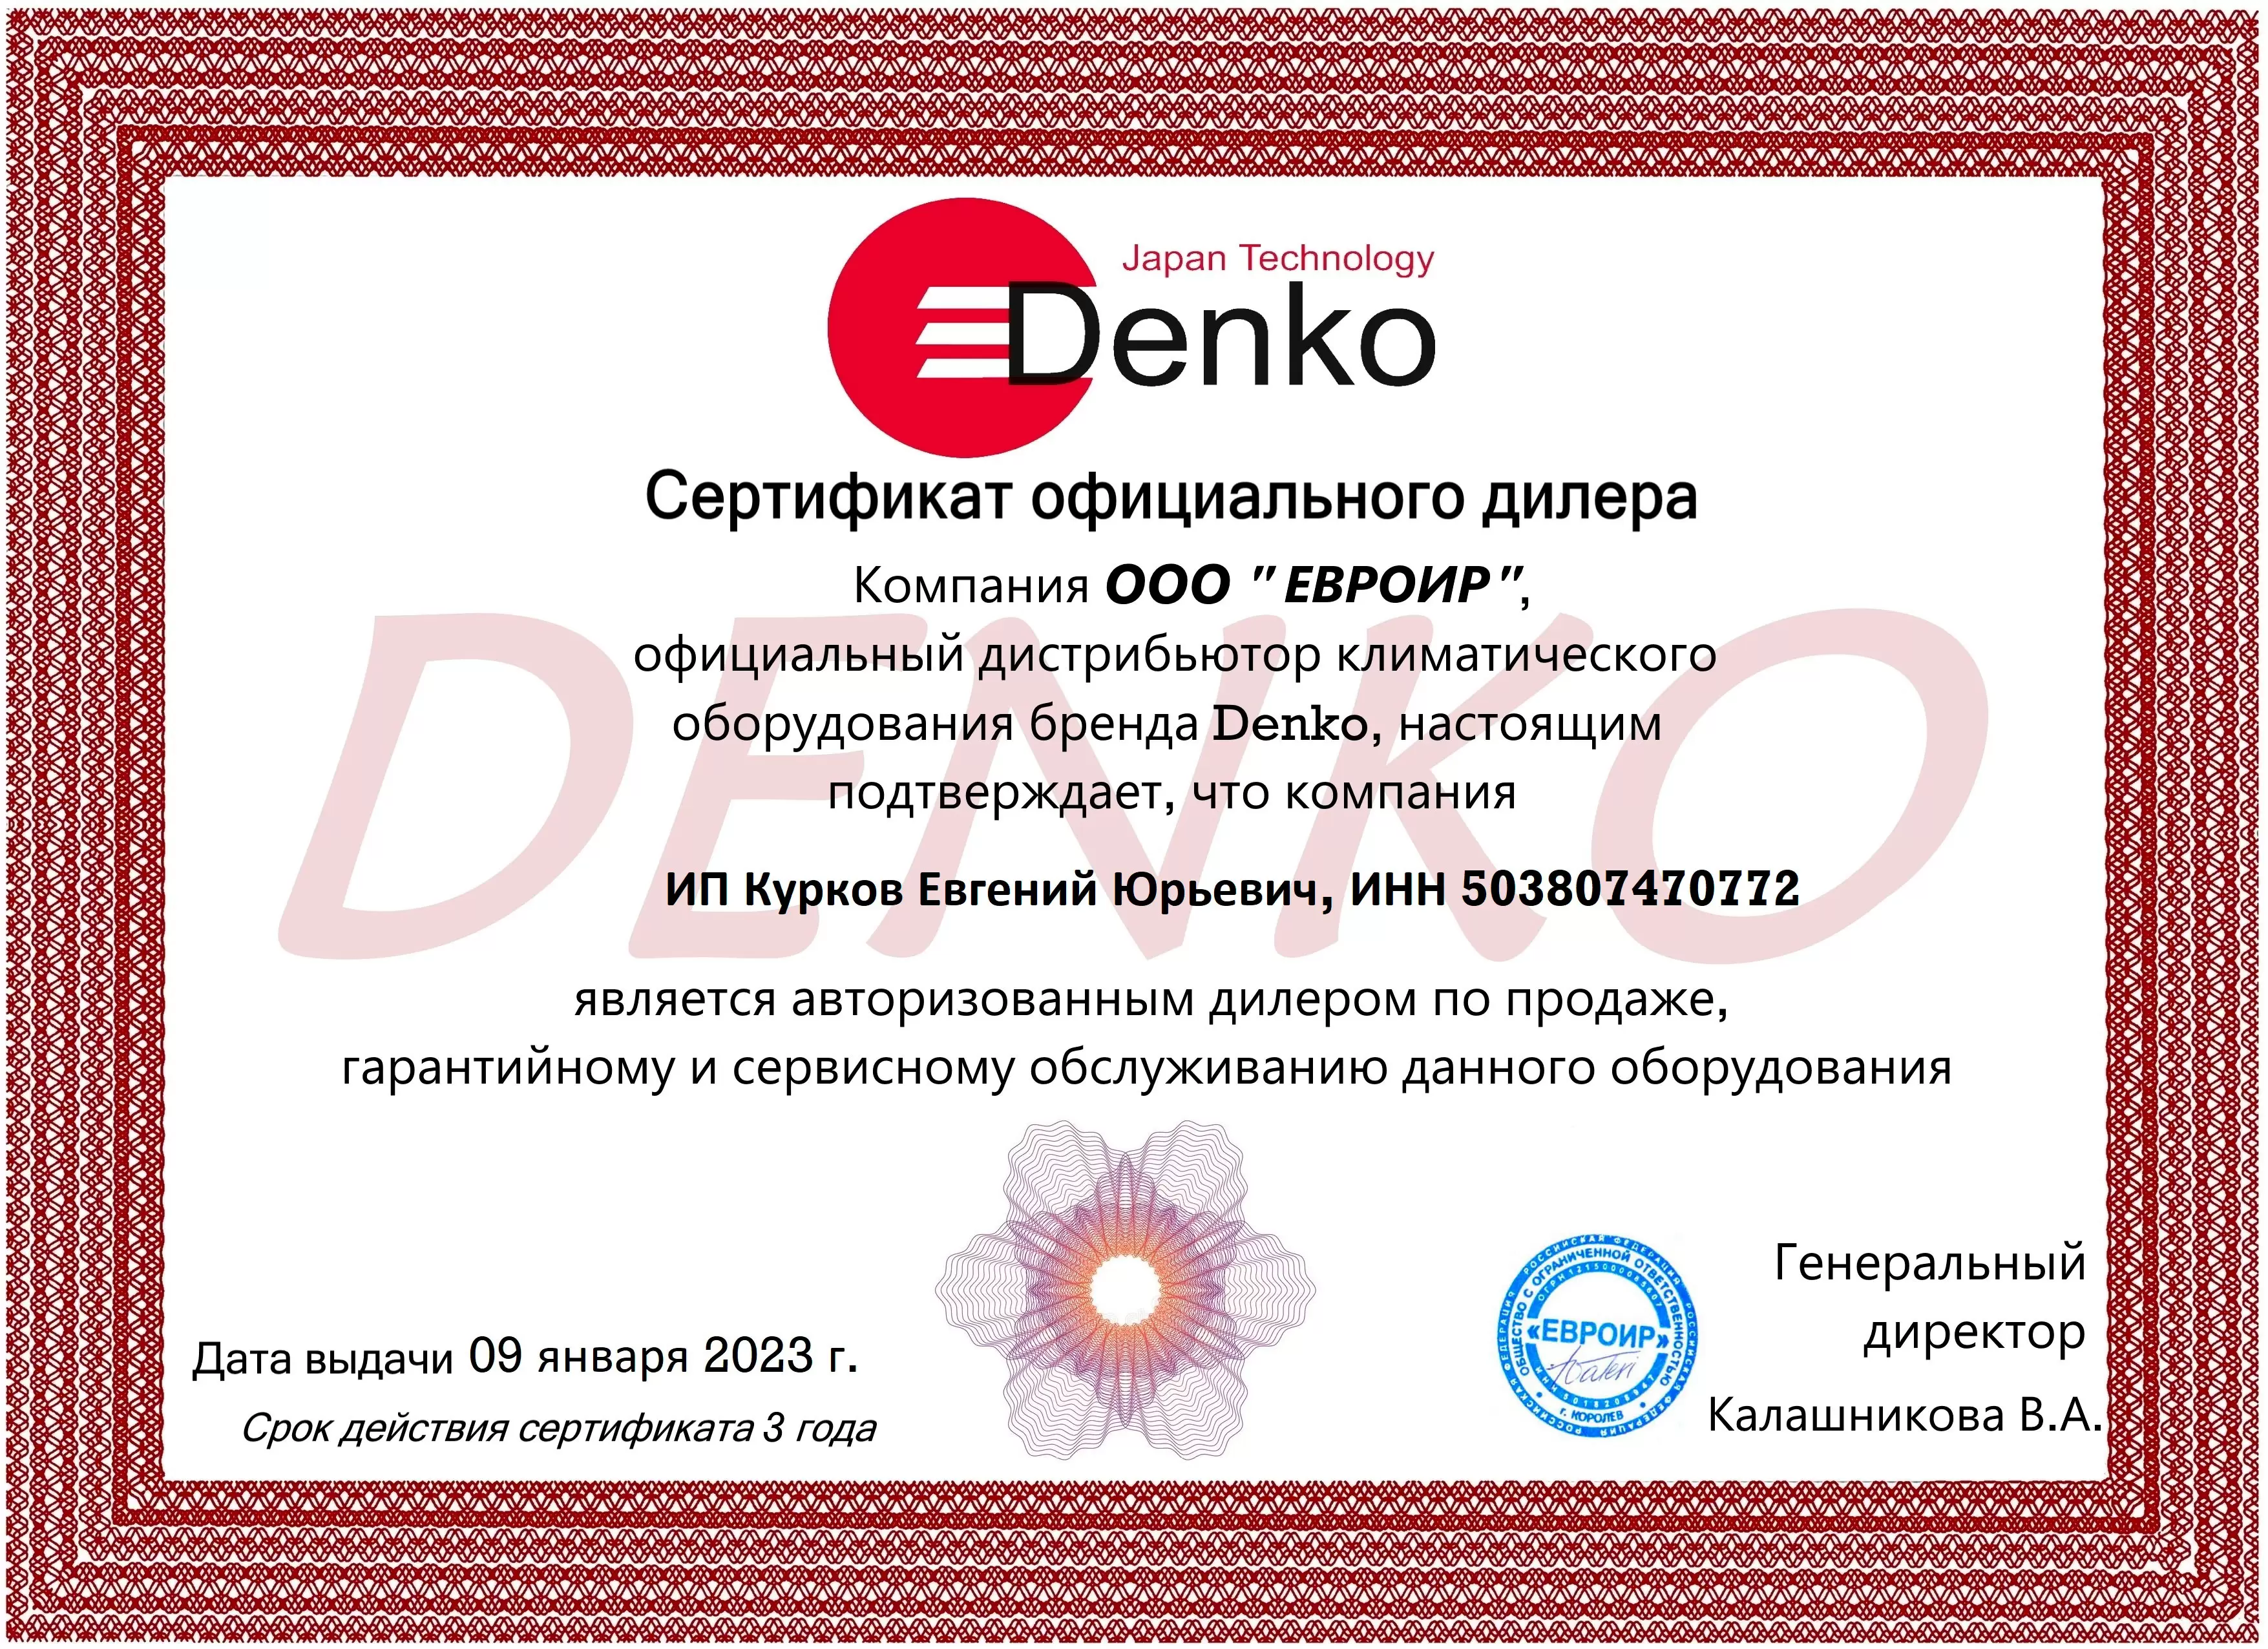 Denko DCS 24 A